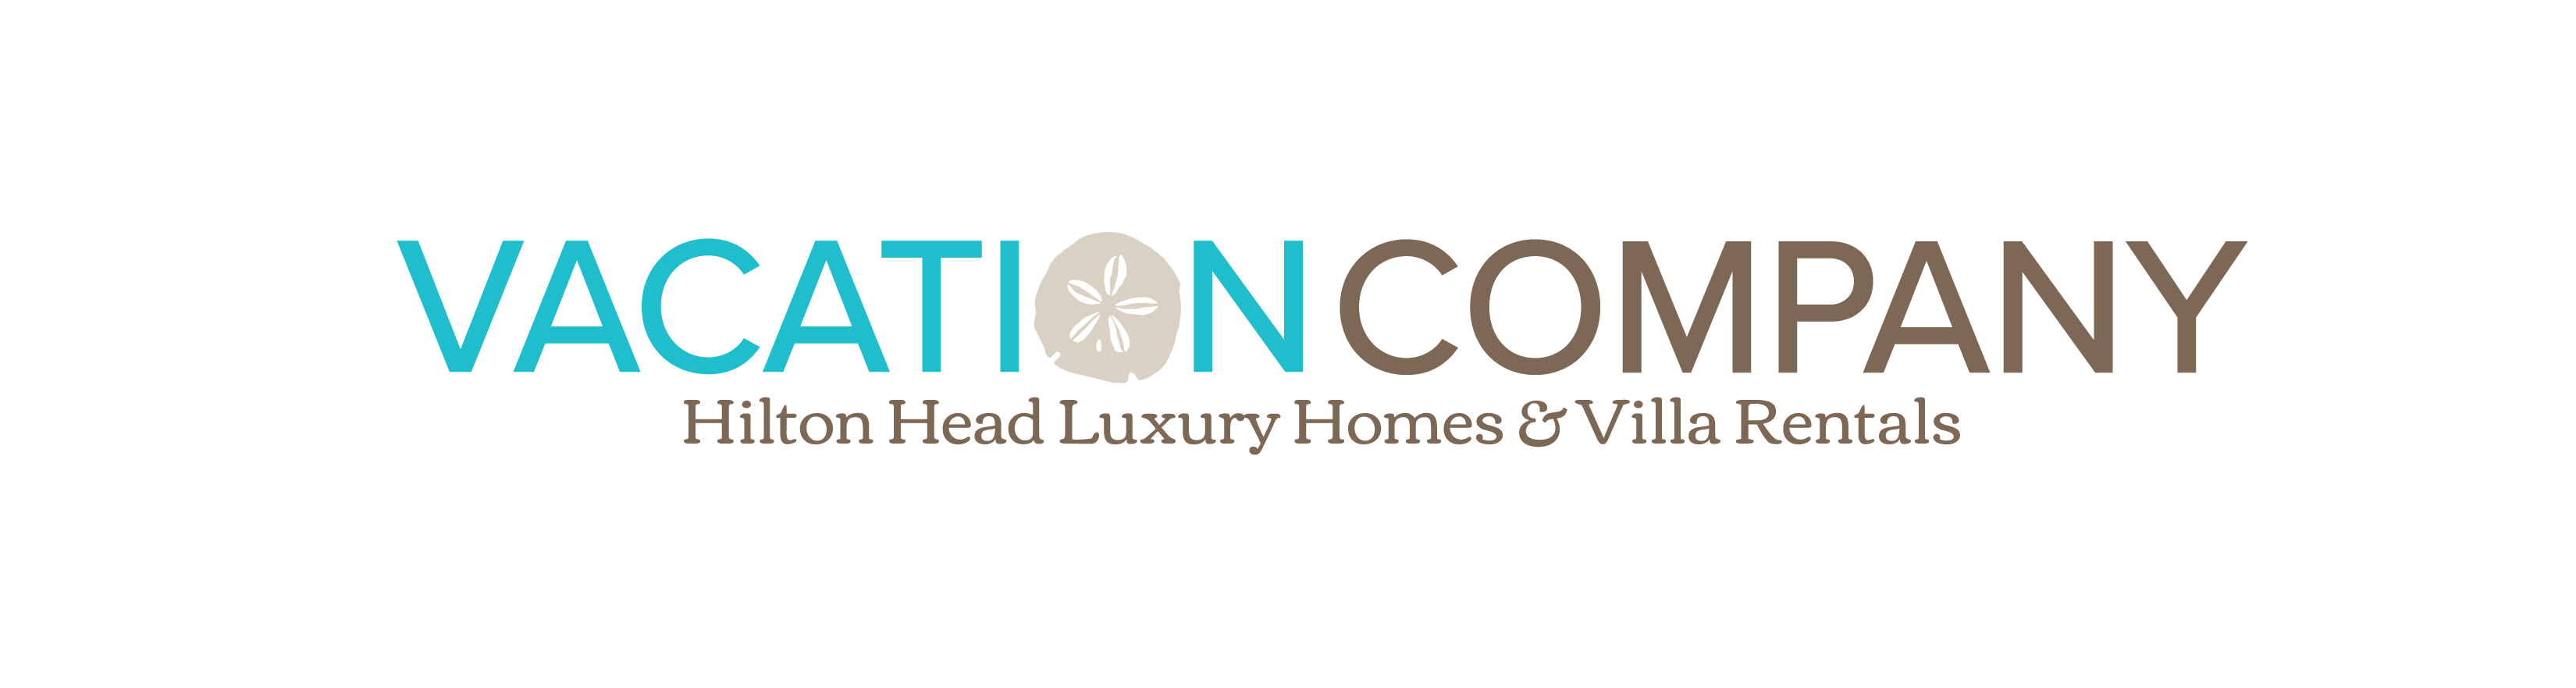 Vacation Company Primary logo (4) (1)